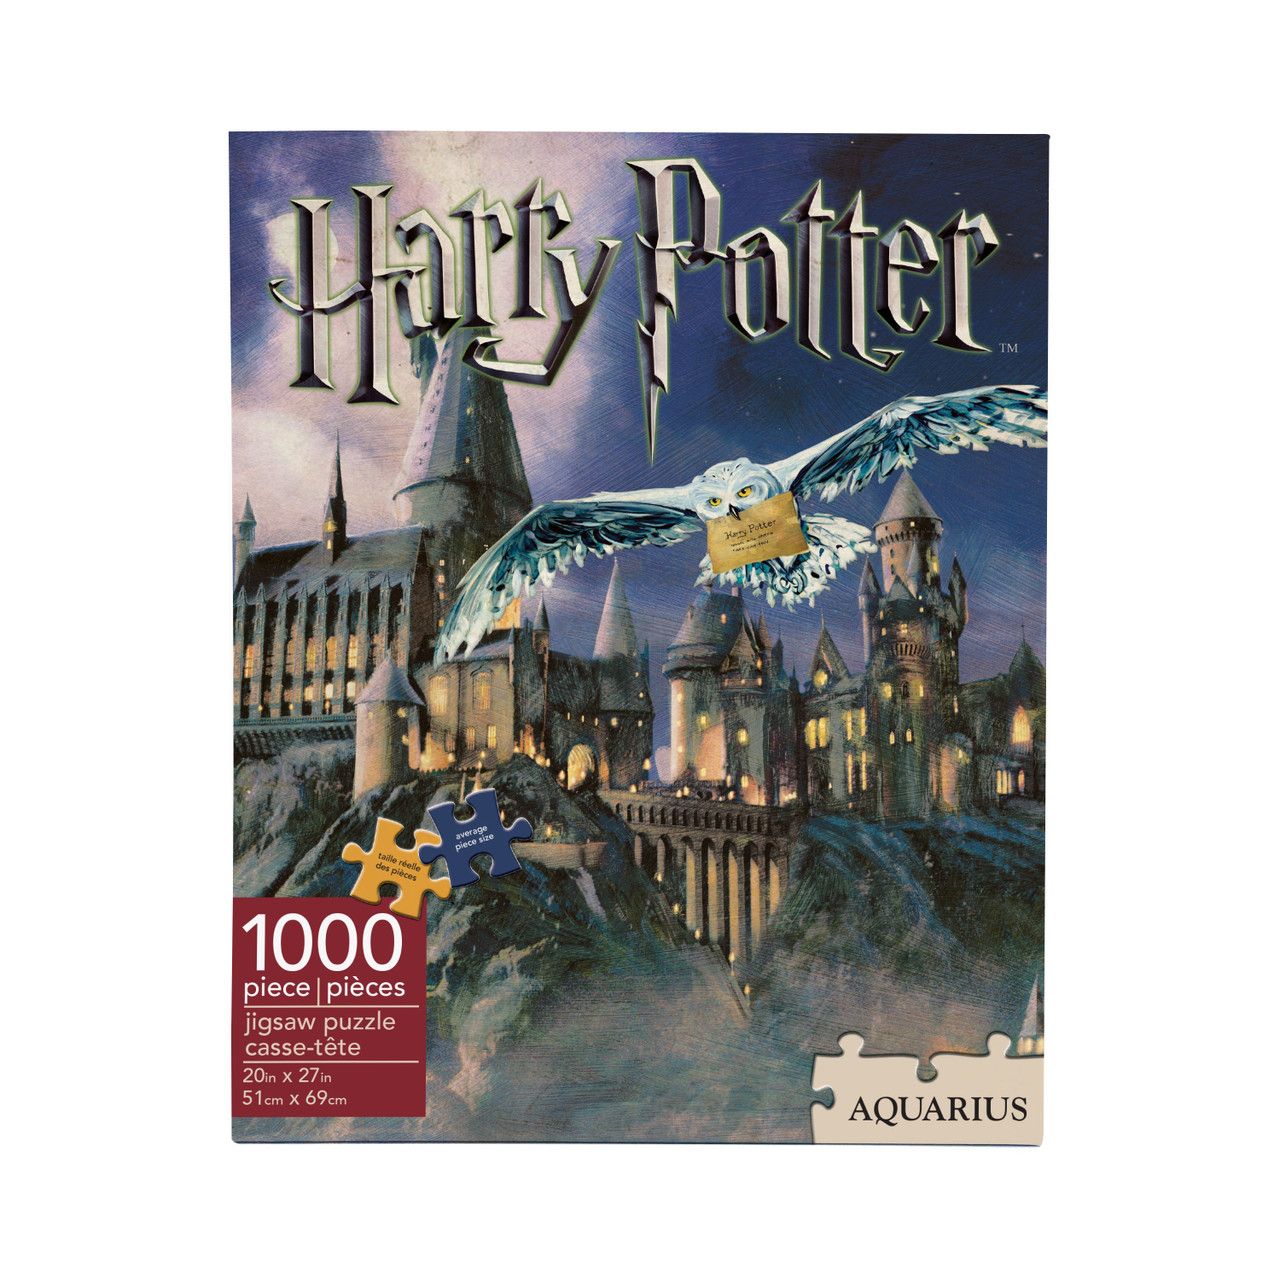 NMR Harry Potter Hogwarts 1000 Piece Puzzle - PUZZLES